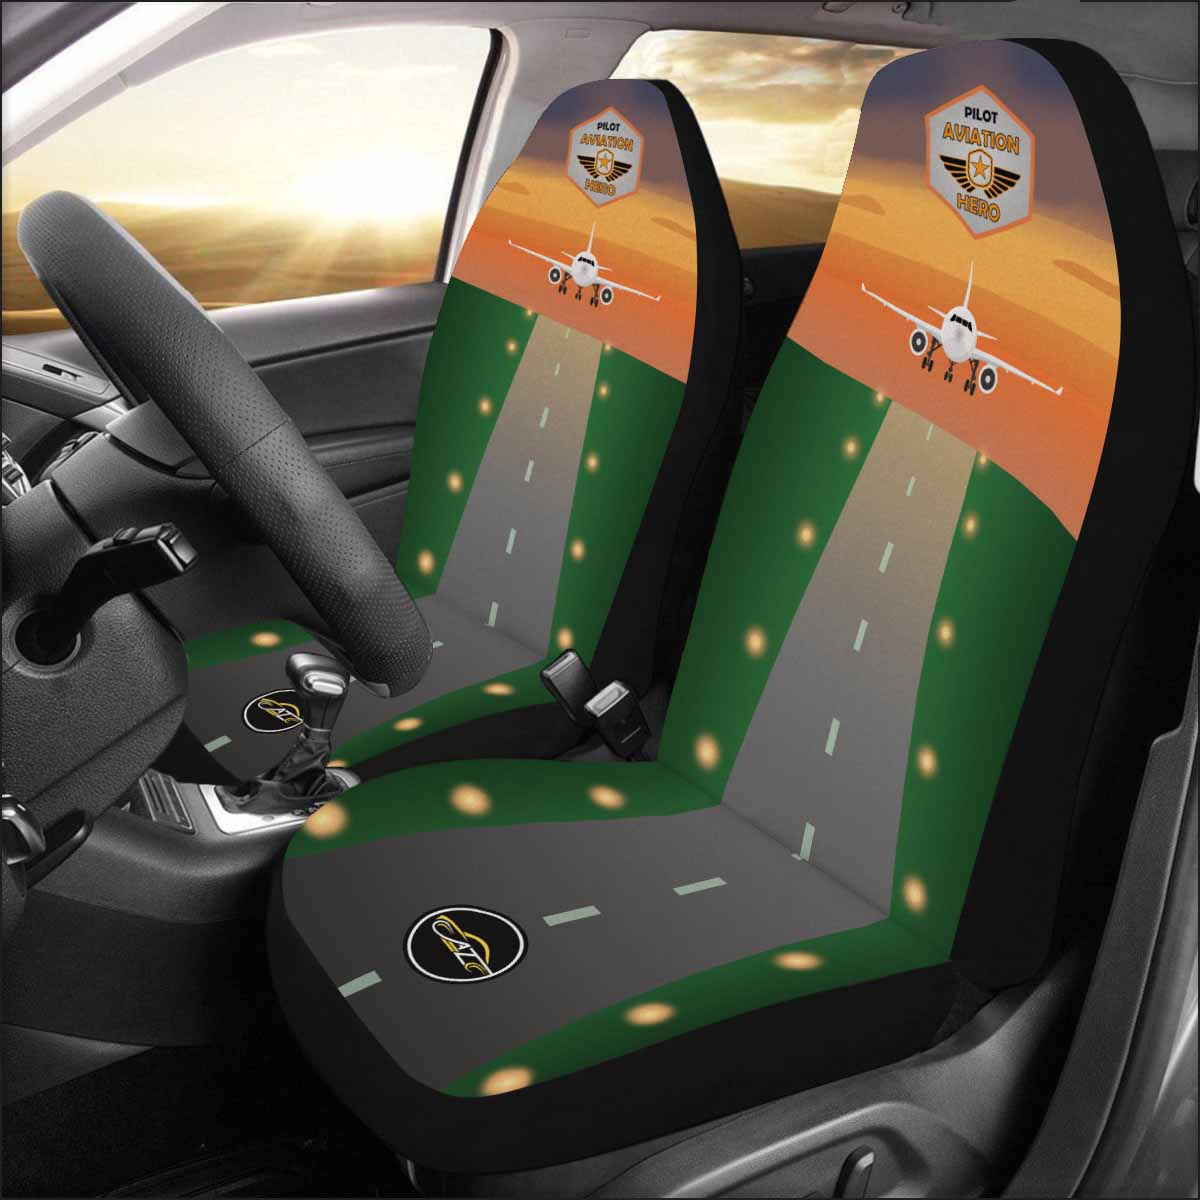 Pilot's Pride Car Seat Covers - Set of 2 Autozendy